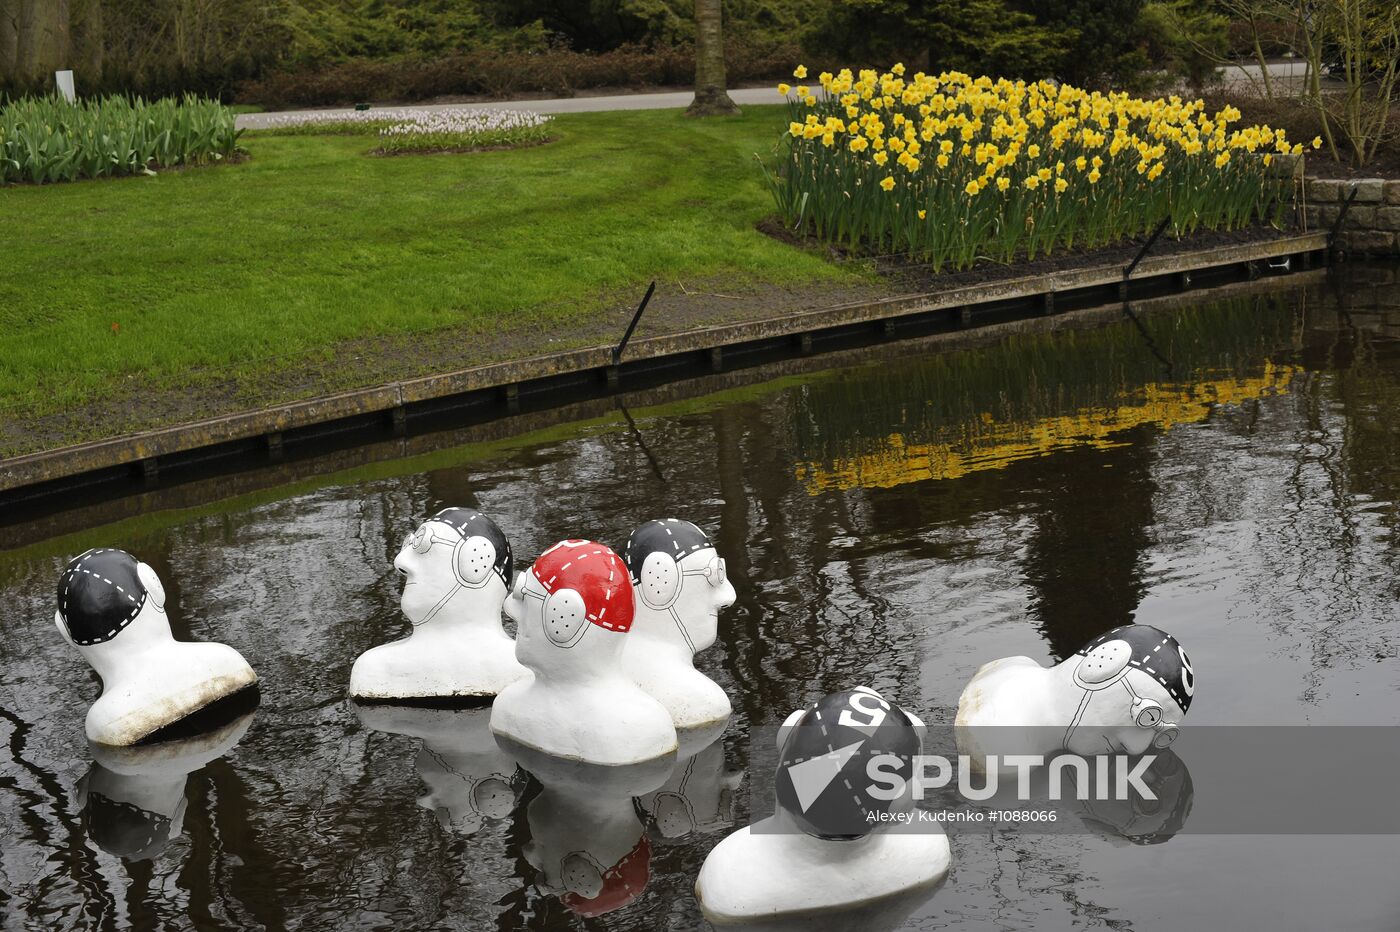 Keukenhof Flower Park in Netherlands